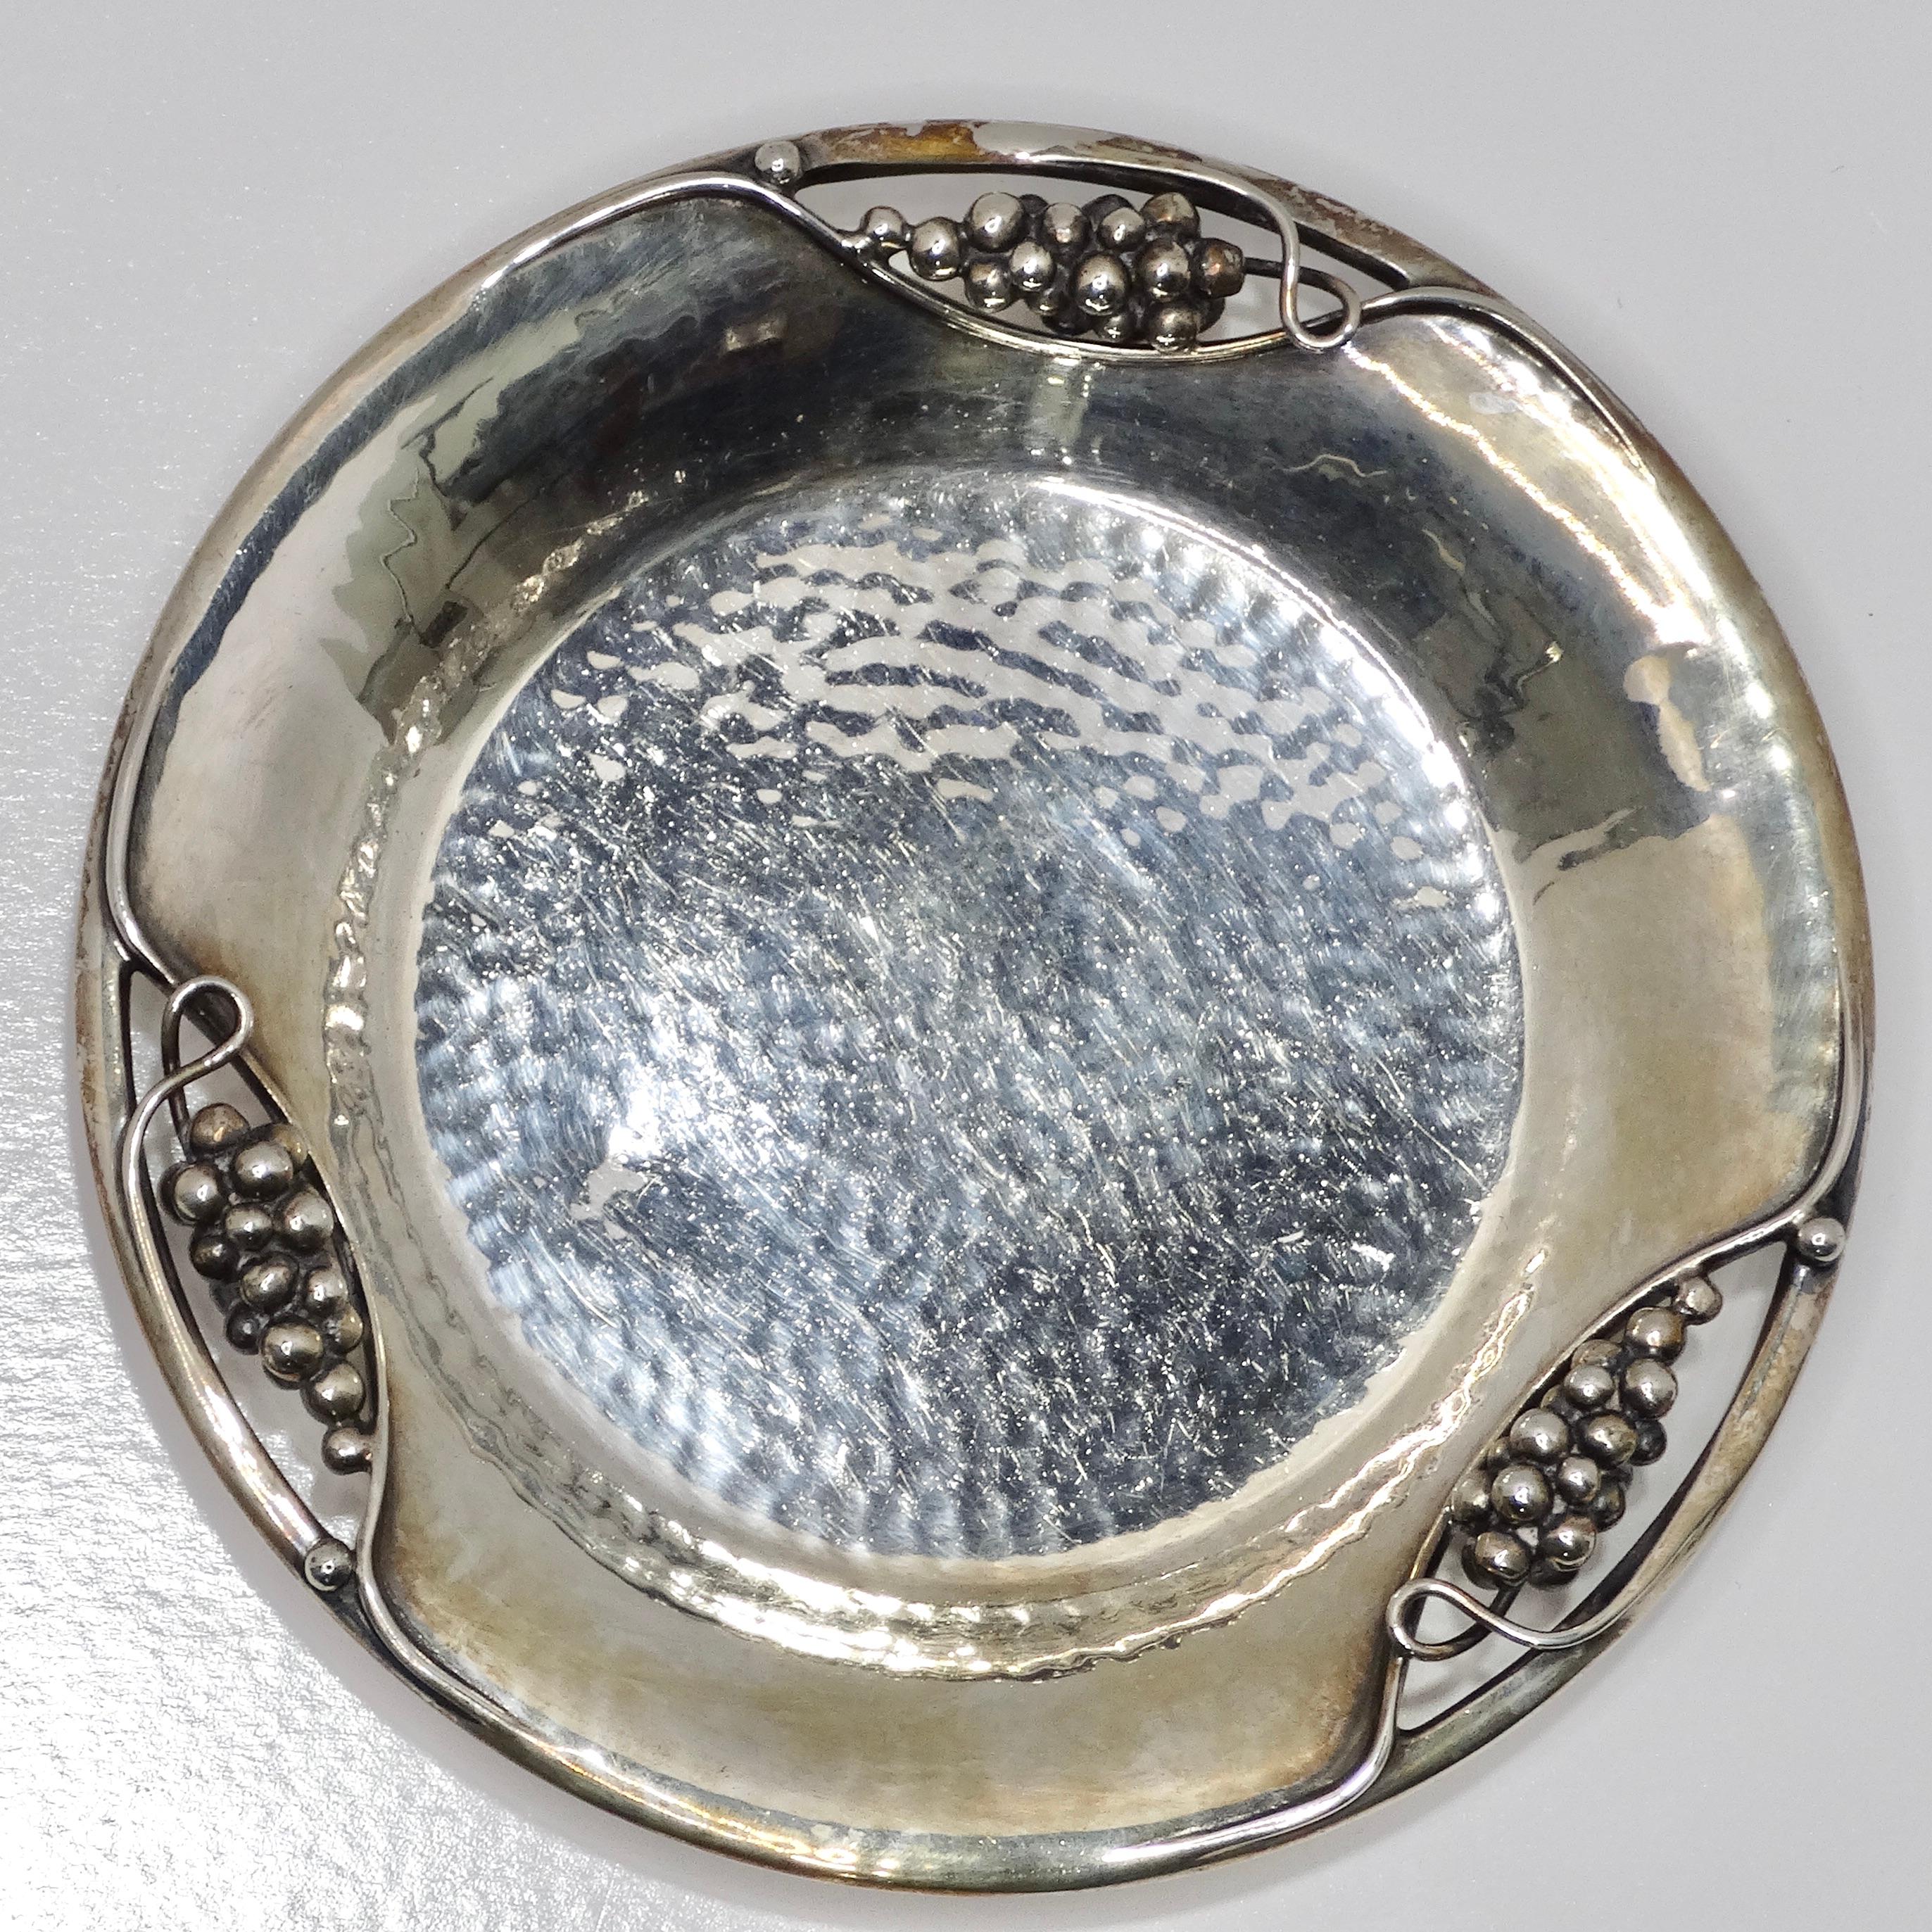 Wir stellen den Antique Pure Silver Grape Motif Plate vor, ein fesselndes Stück, das zeitlose Eleganz und Luxus ausstrahlt.

Dieser Teller aus reinem Silber, der Anfang 1900 hergestellt wurde, zeigt exquisite Traubenmotive, die fein an den Seiten